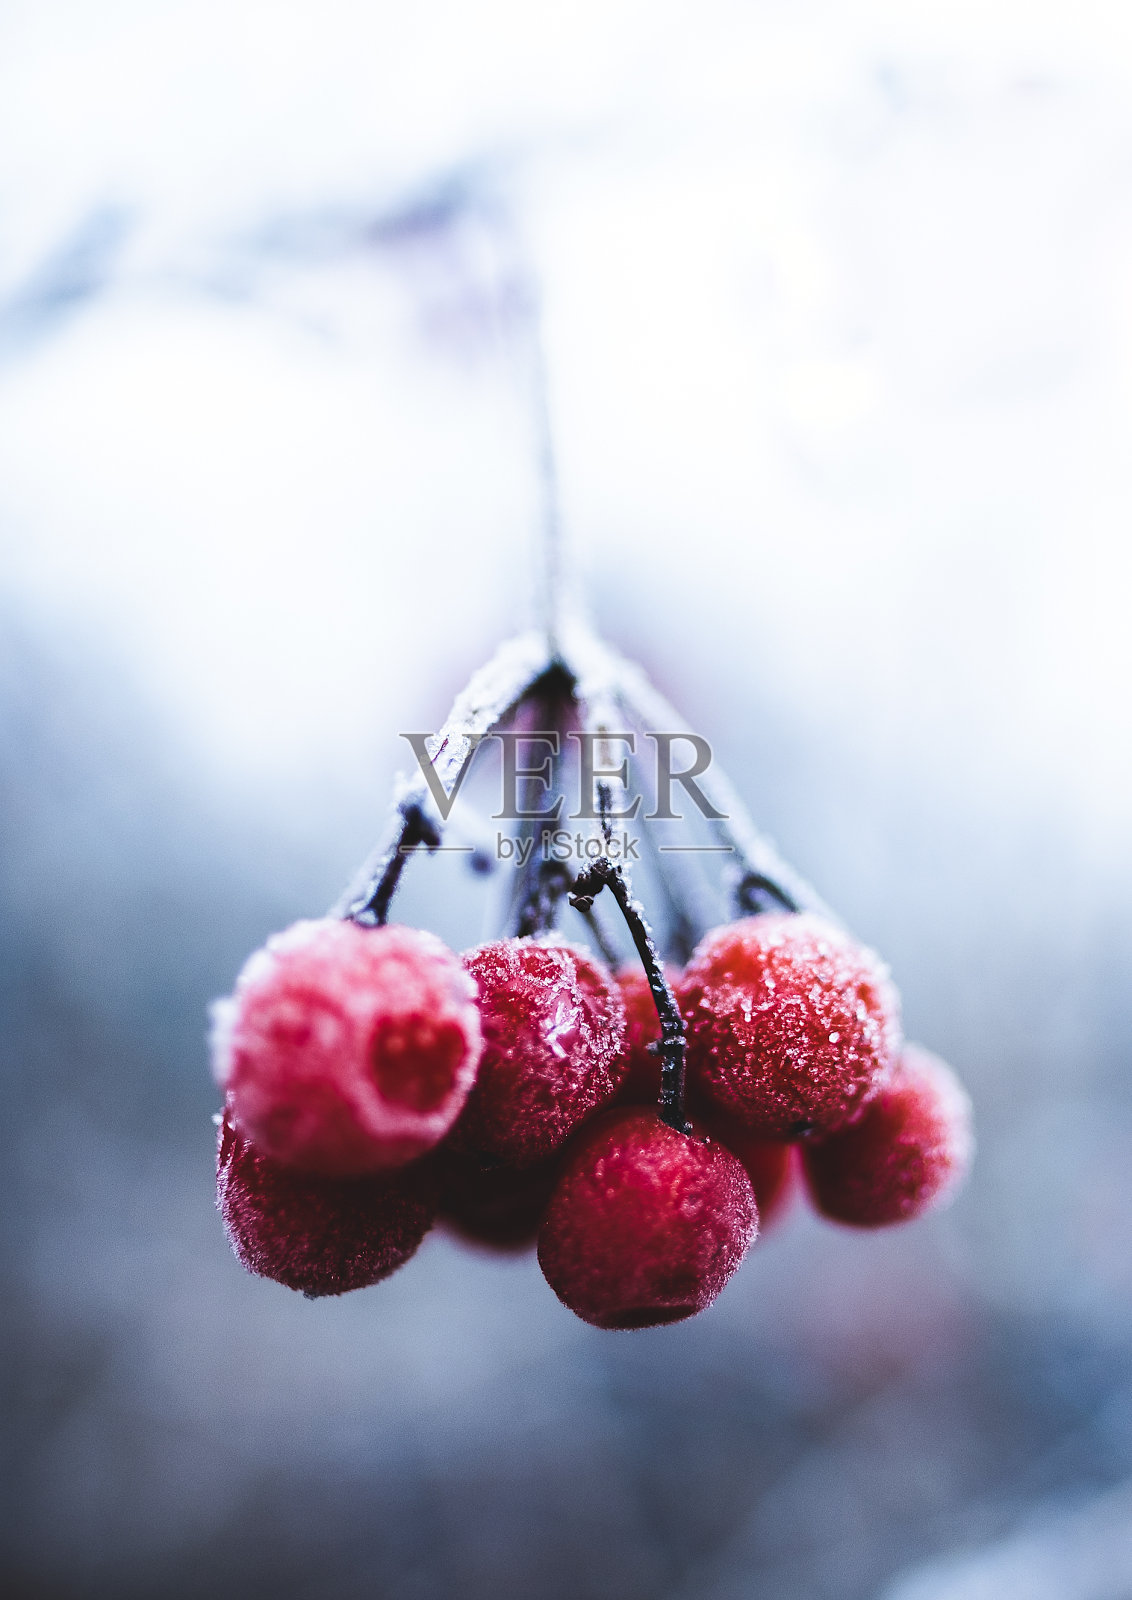 垂直特写拍摄冰冻樱桃挂在树枝在寒冷的冬天的一天照片摄影图片